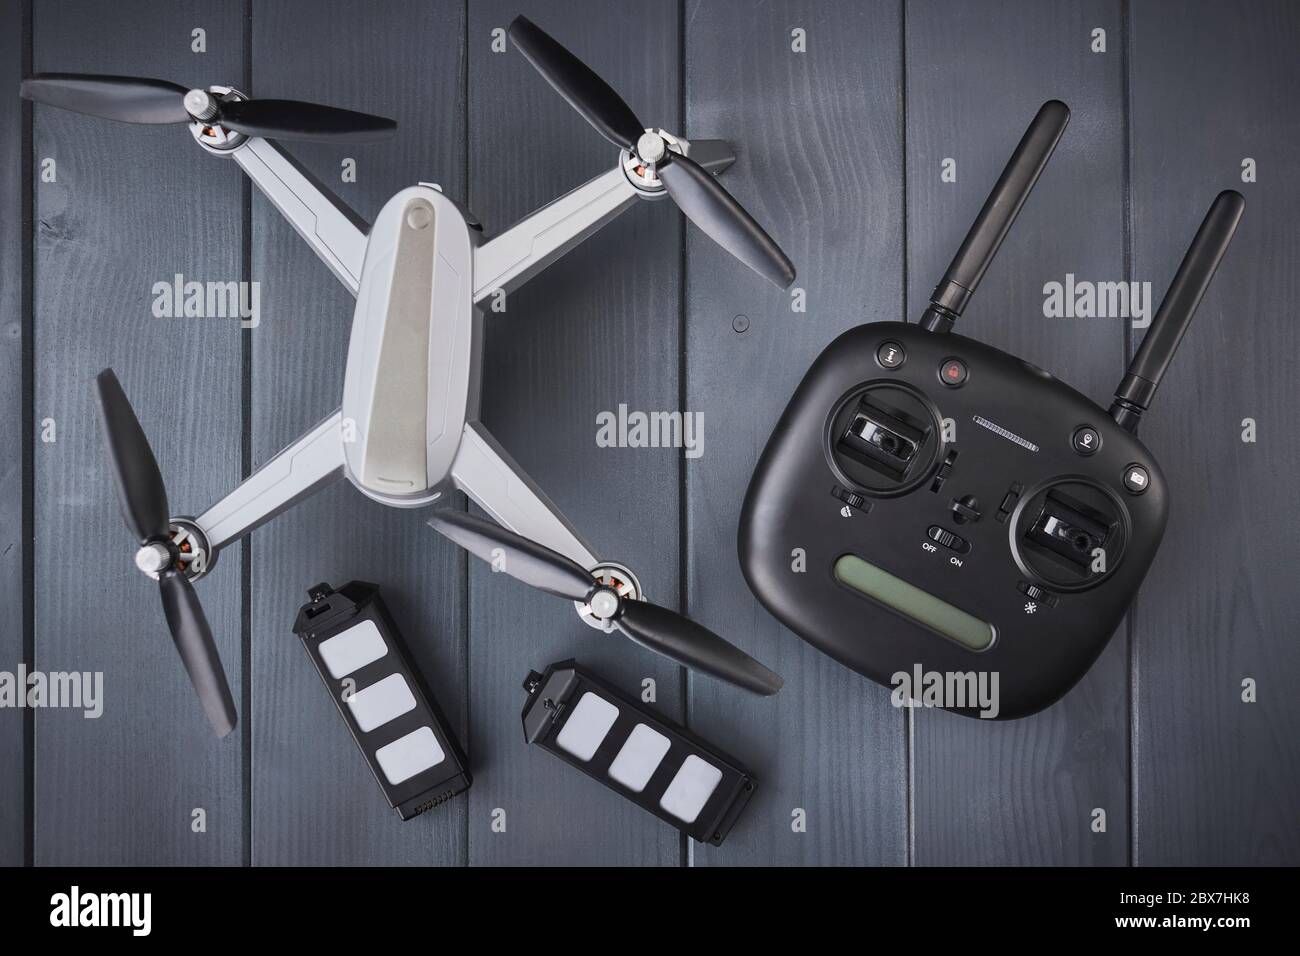 Drone à moteur quadruple avec caméra haute résolution, batteries et commande radio à double fréquence pour capturer des images aériennes Banque D'Images